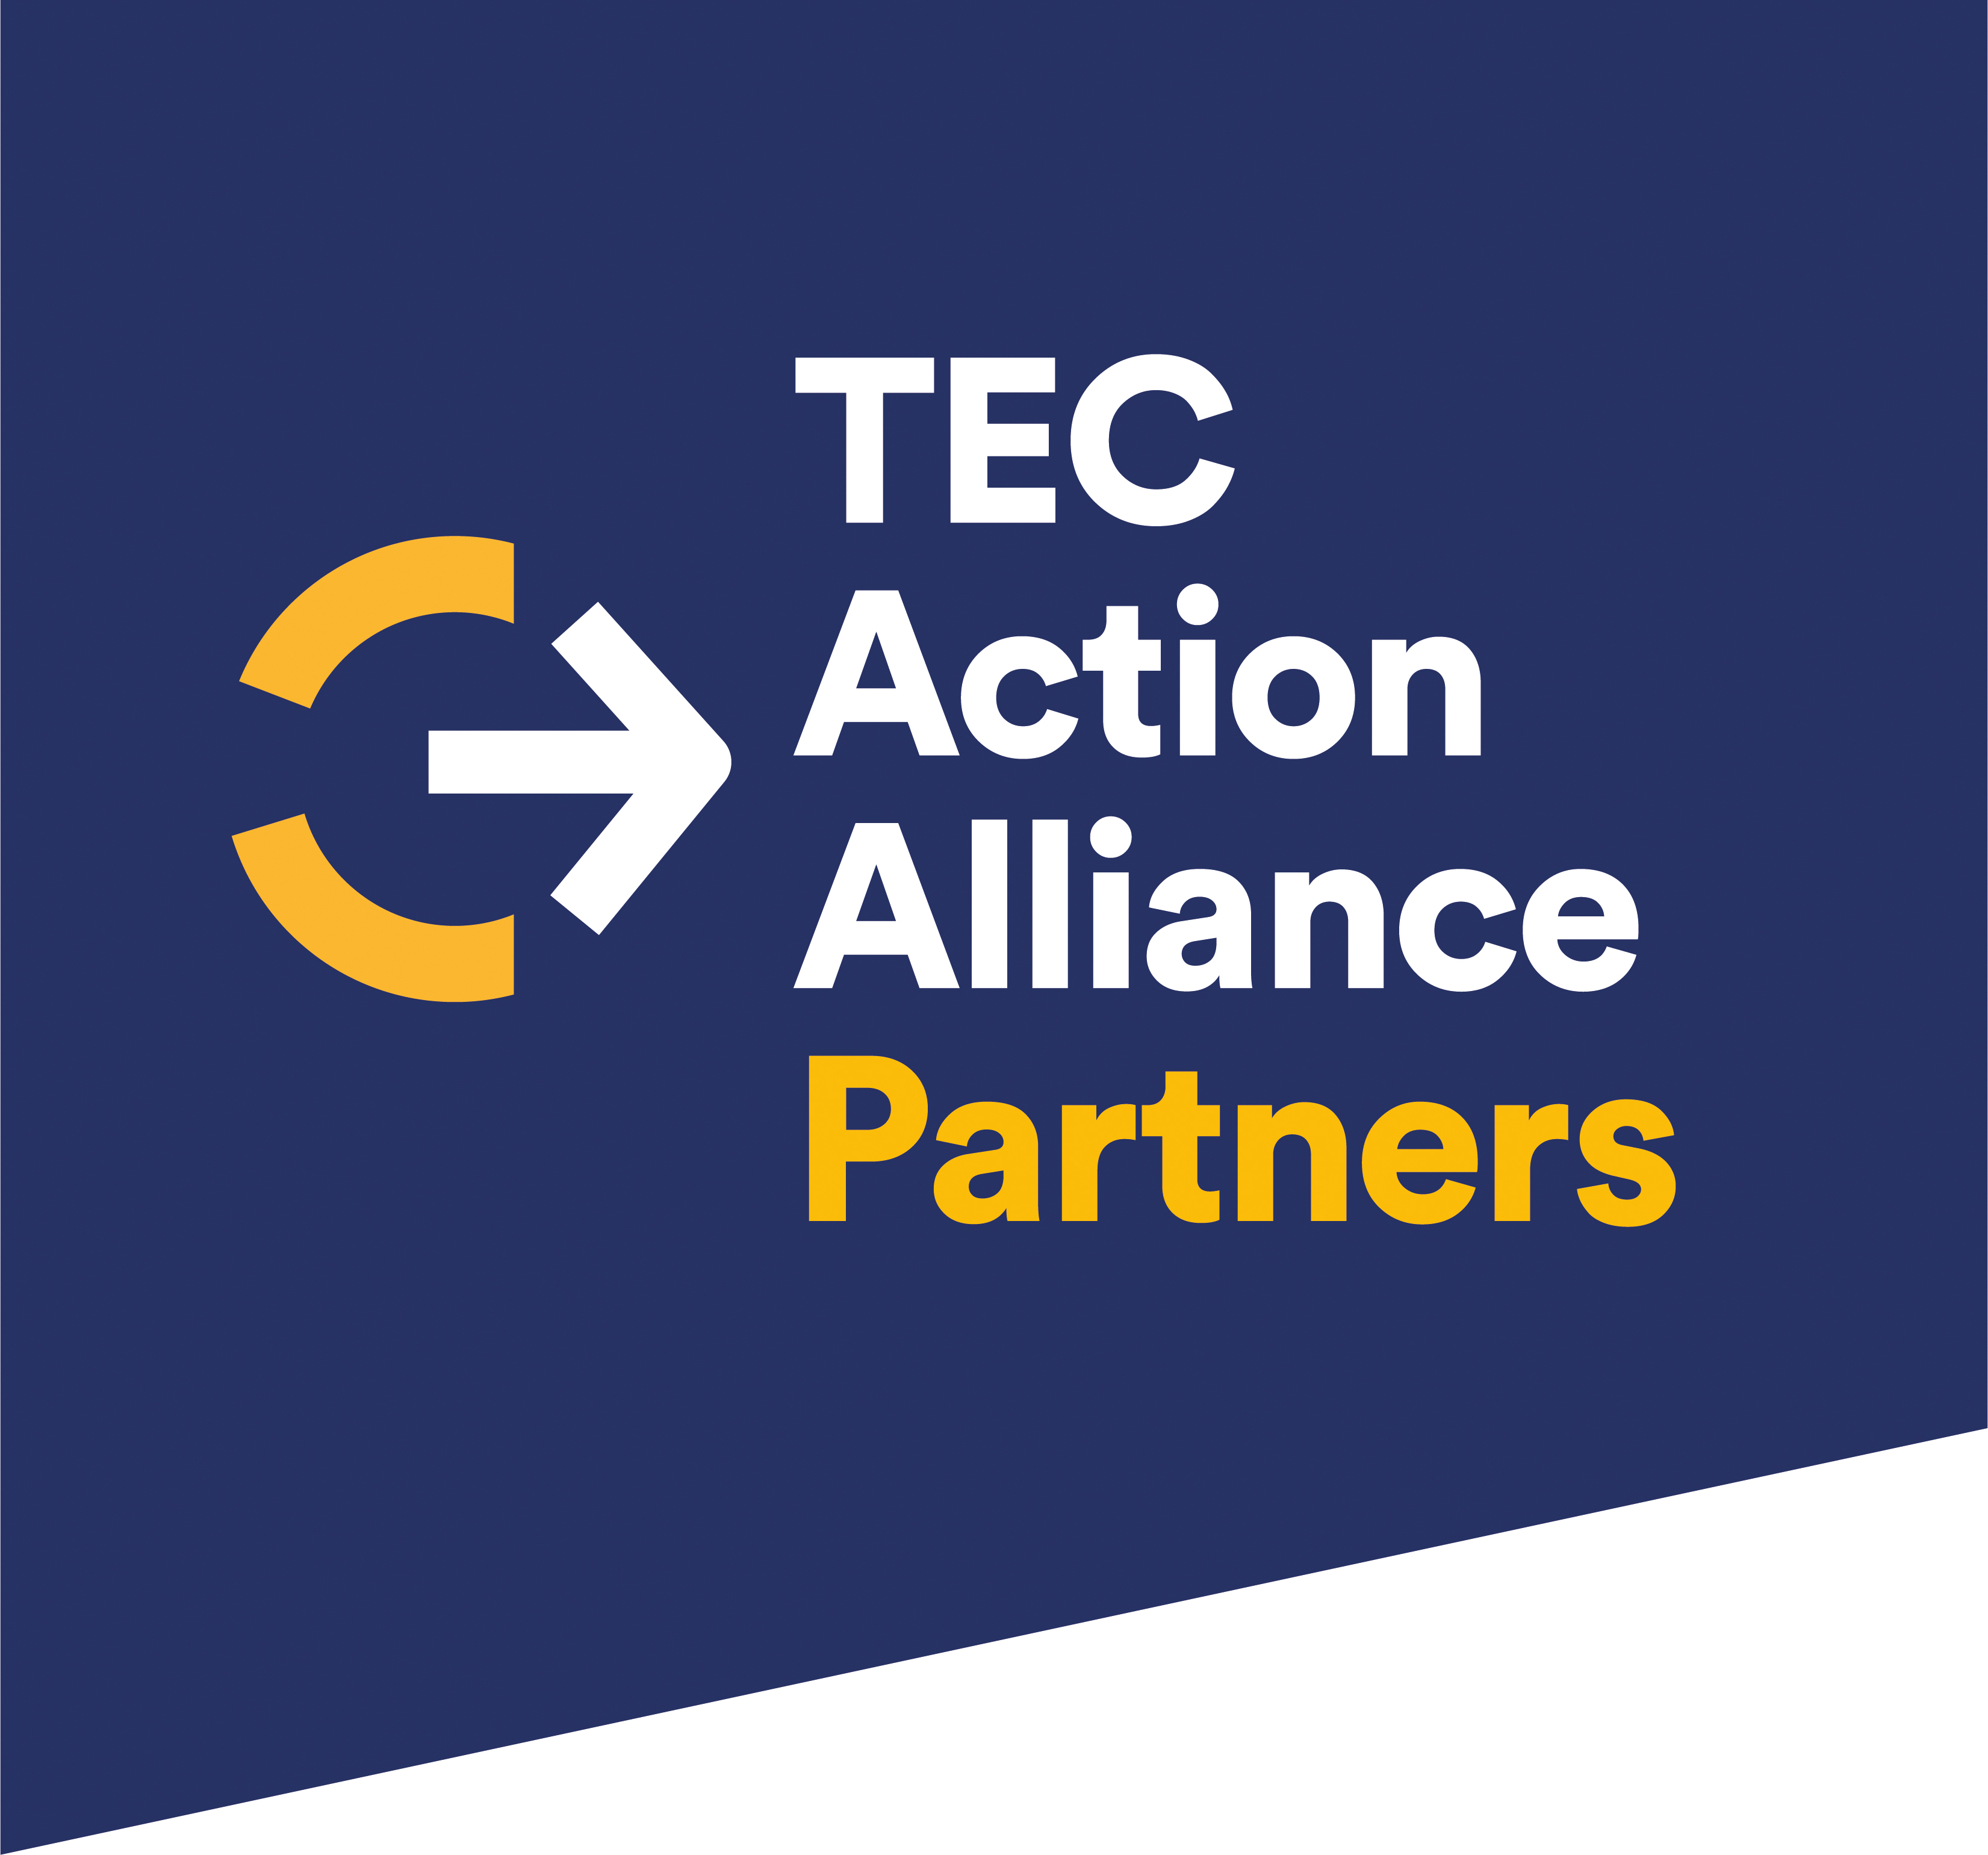 TEC Action Alliance partners